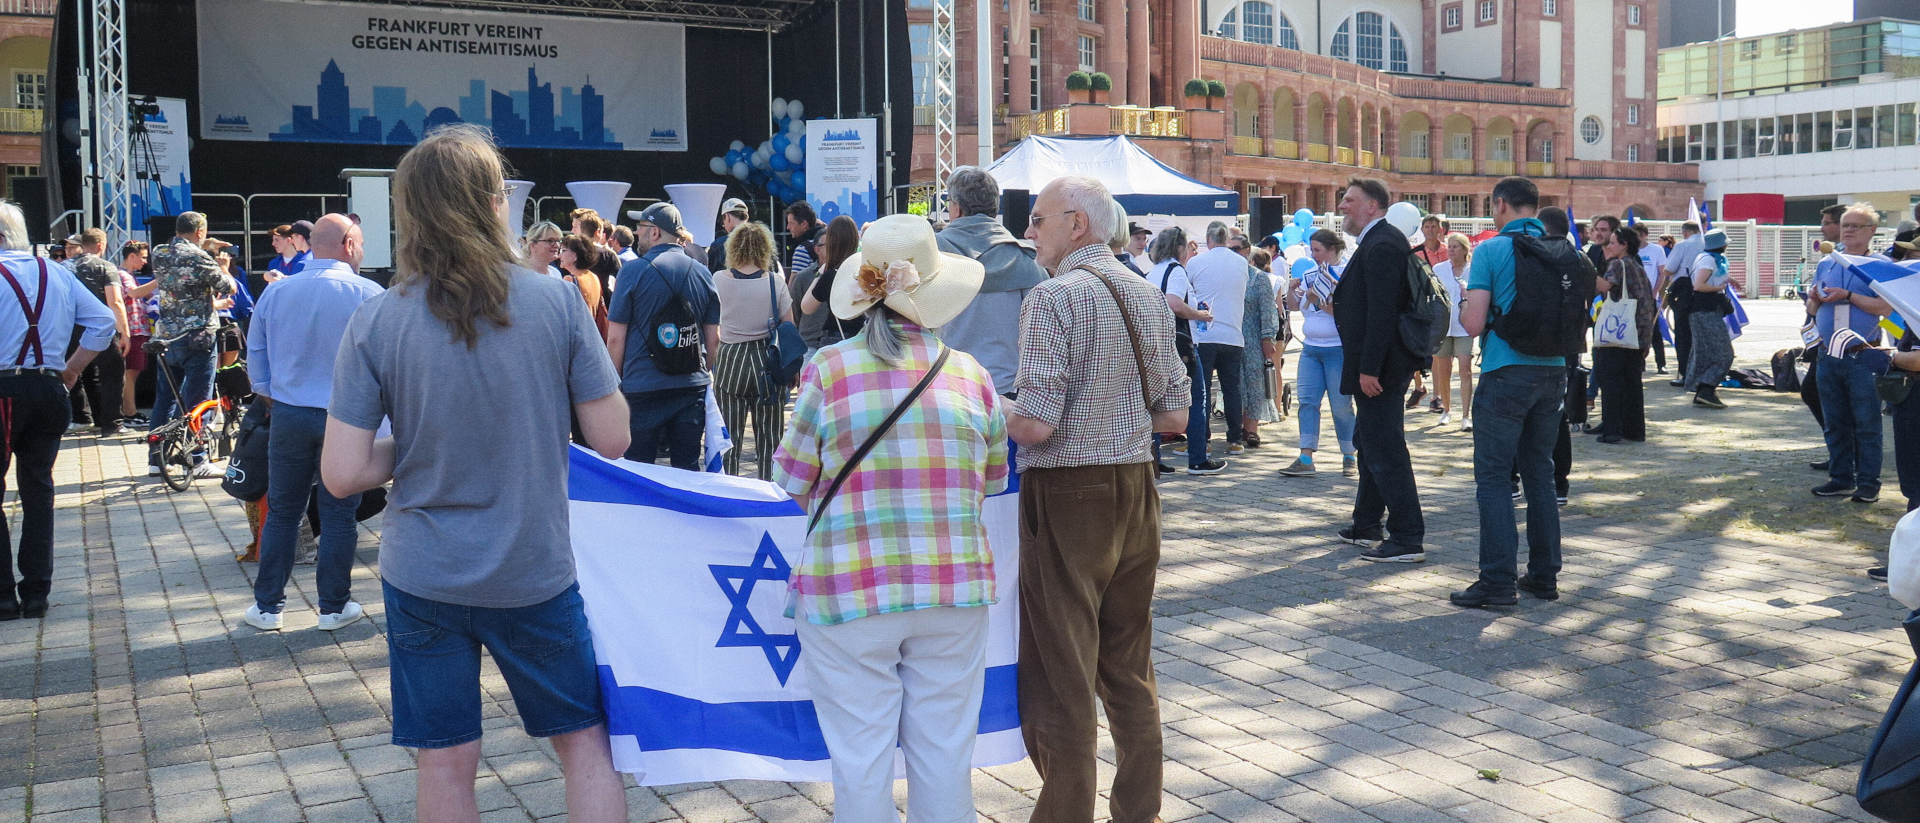 Menschen mit einer israelischen Flagge protestieren vor der Festhalle gegen das Roger-Waters-Konzert am 28. Mai 2023 in Frankfurt.